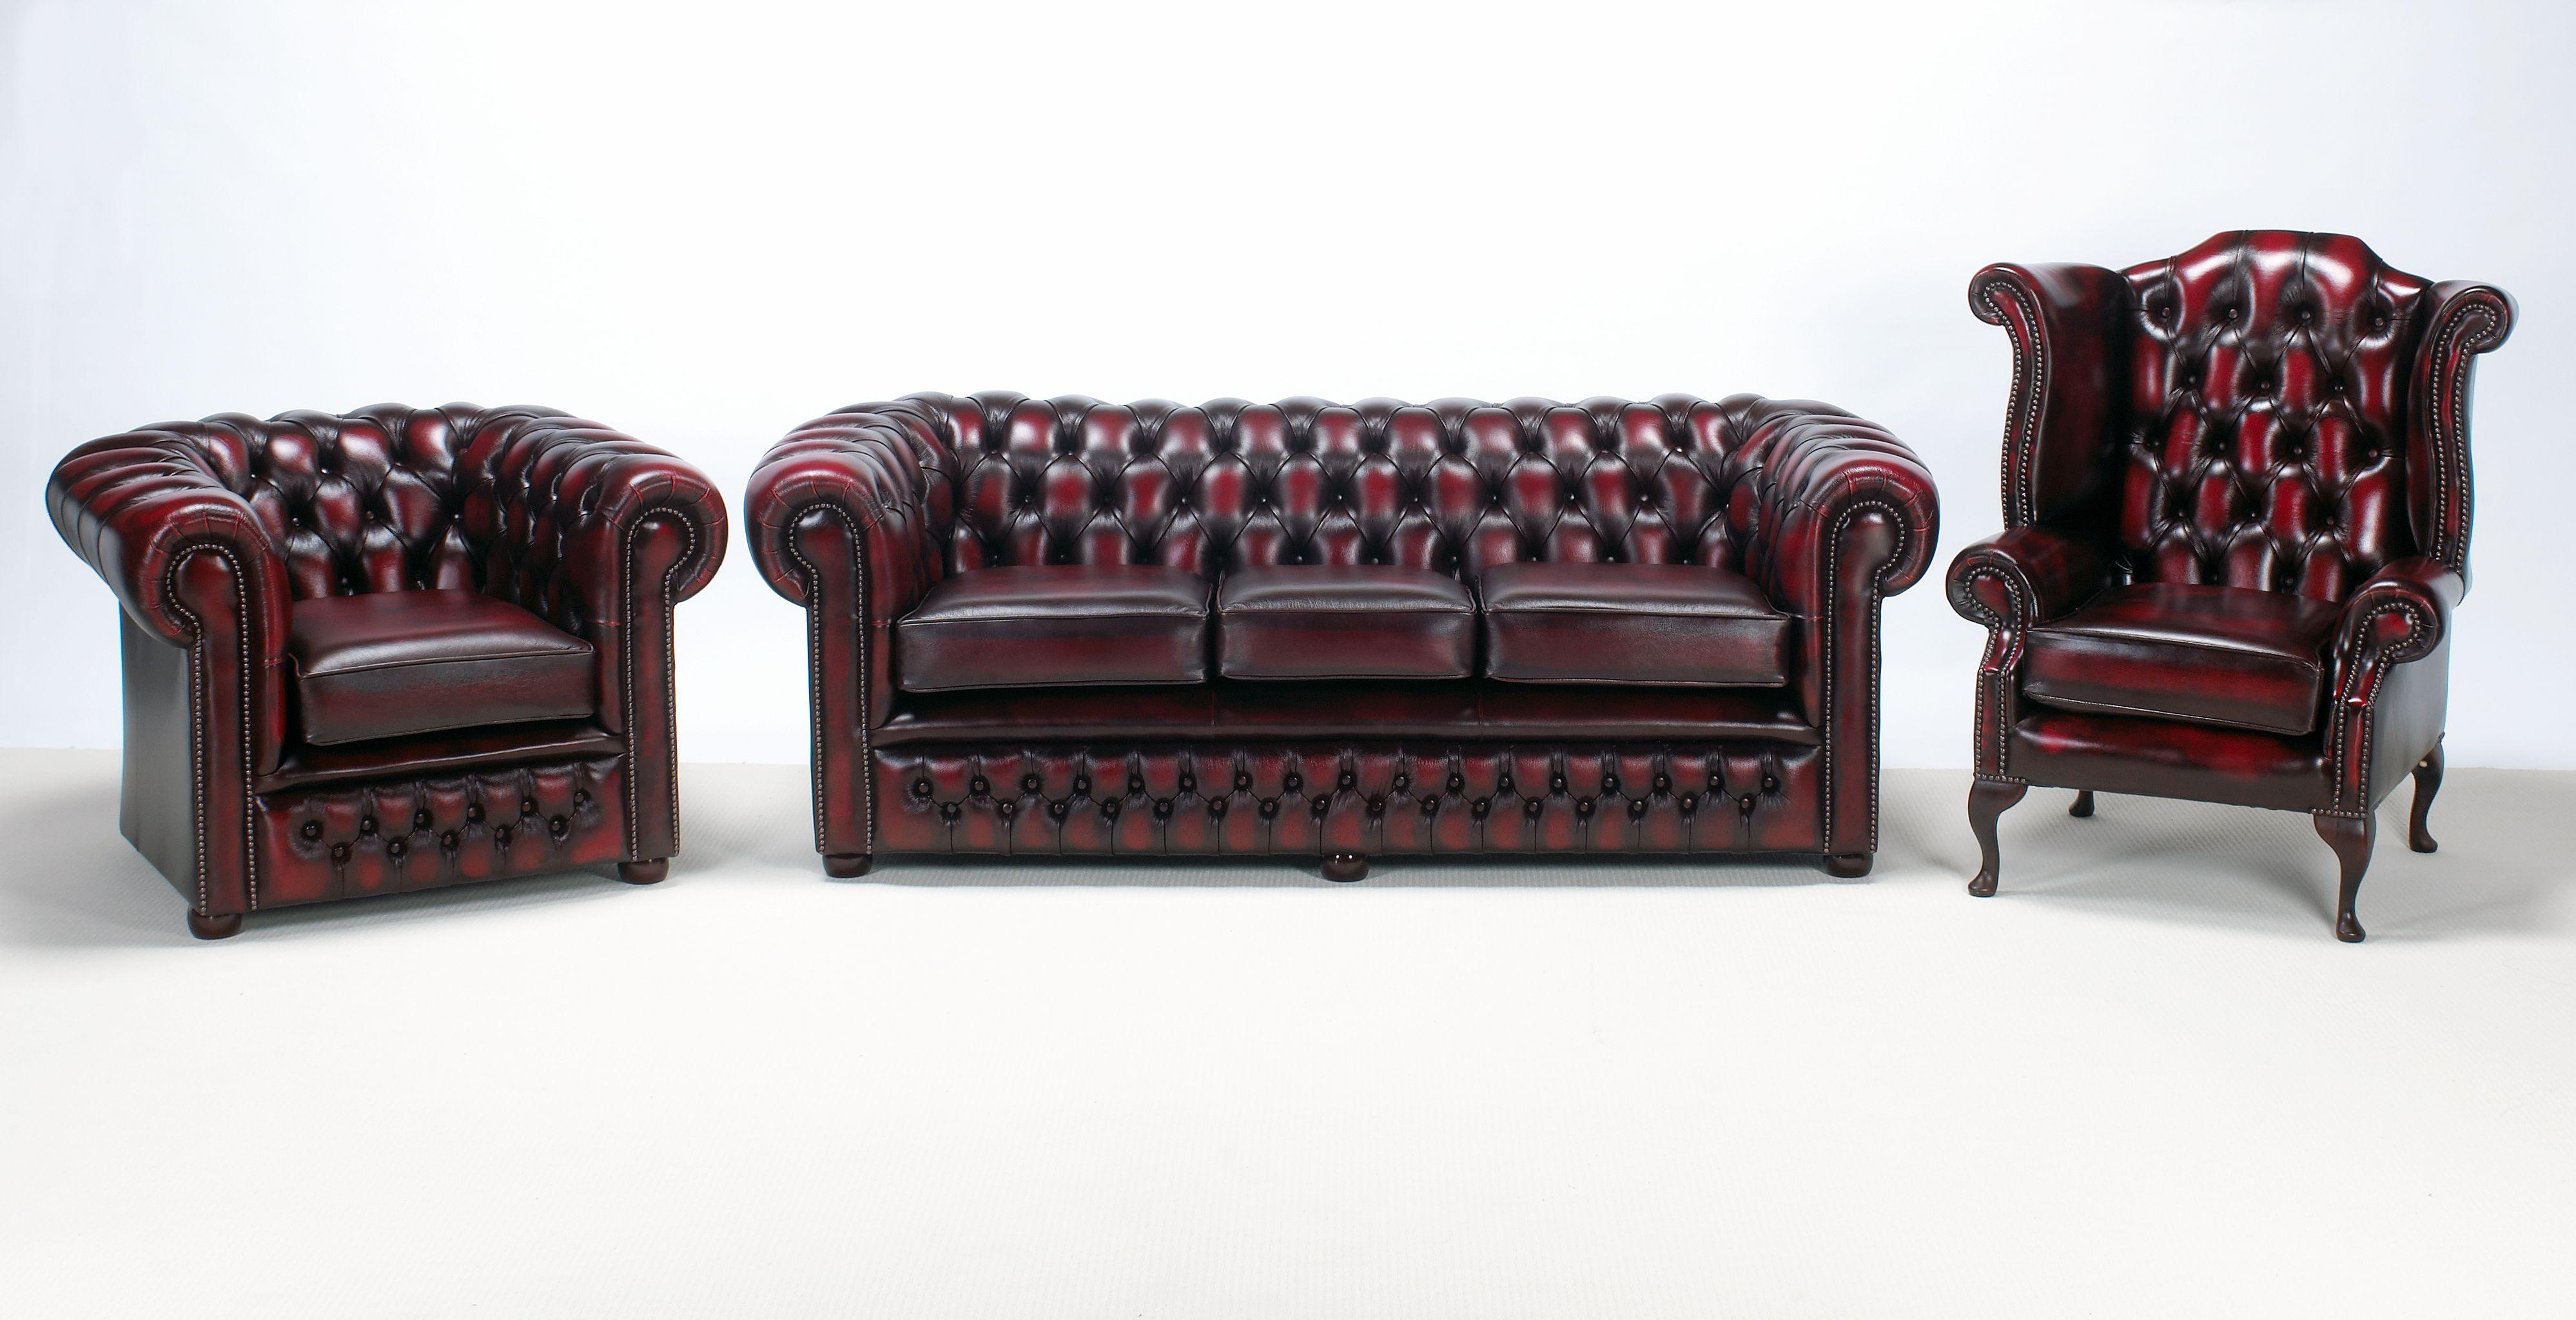 The Bolton Chesterfield Sofa-kanapa 3 osobowa 